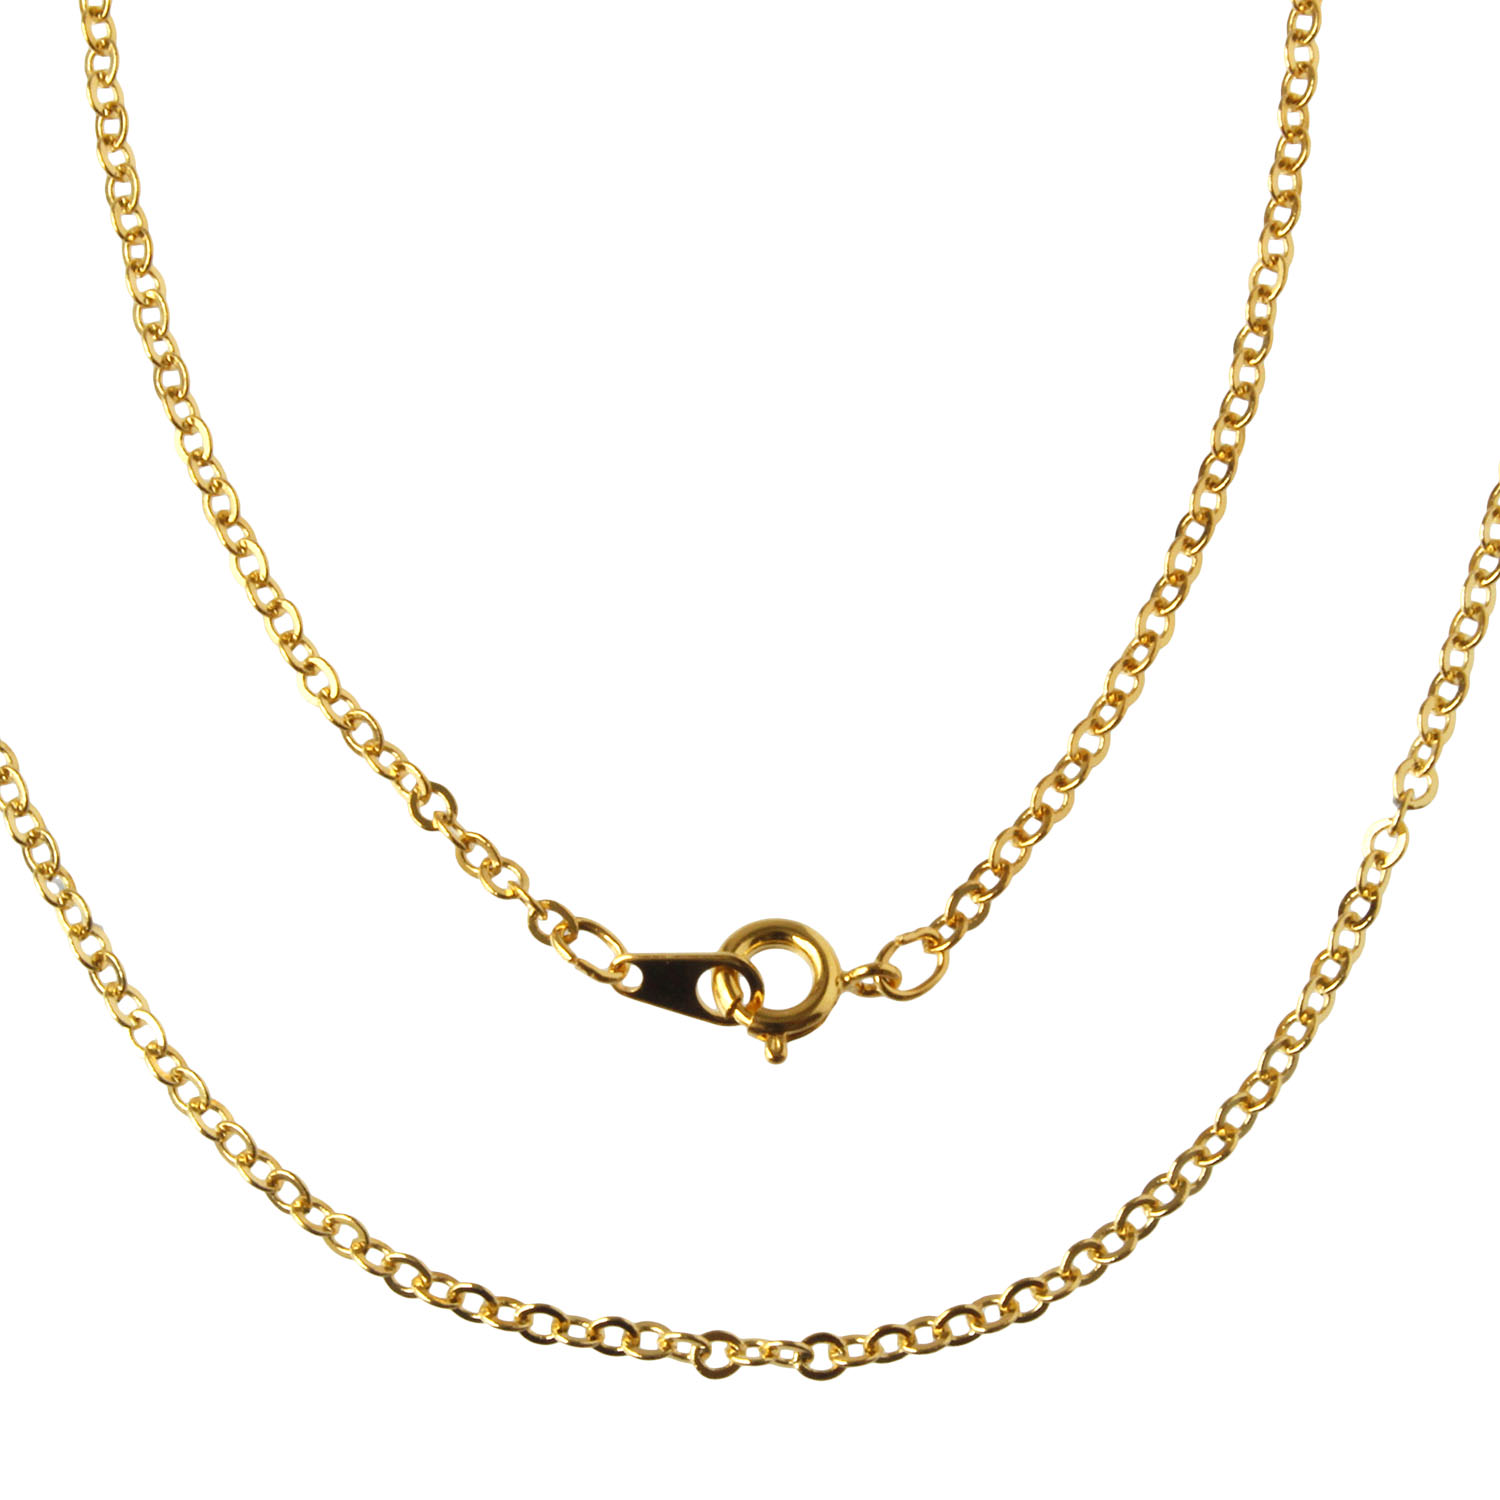 KE313 Necklace Chain, 60cm  5pcs (pack)